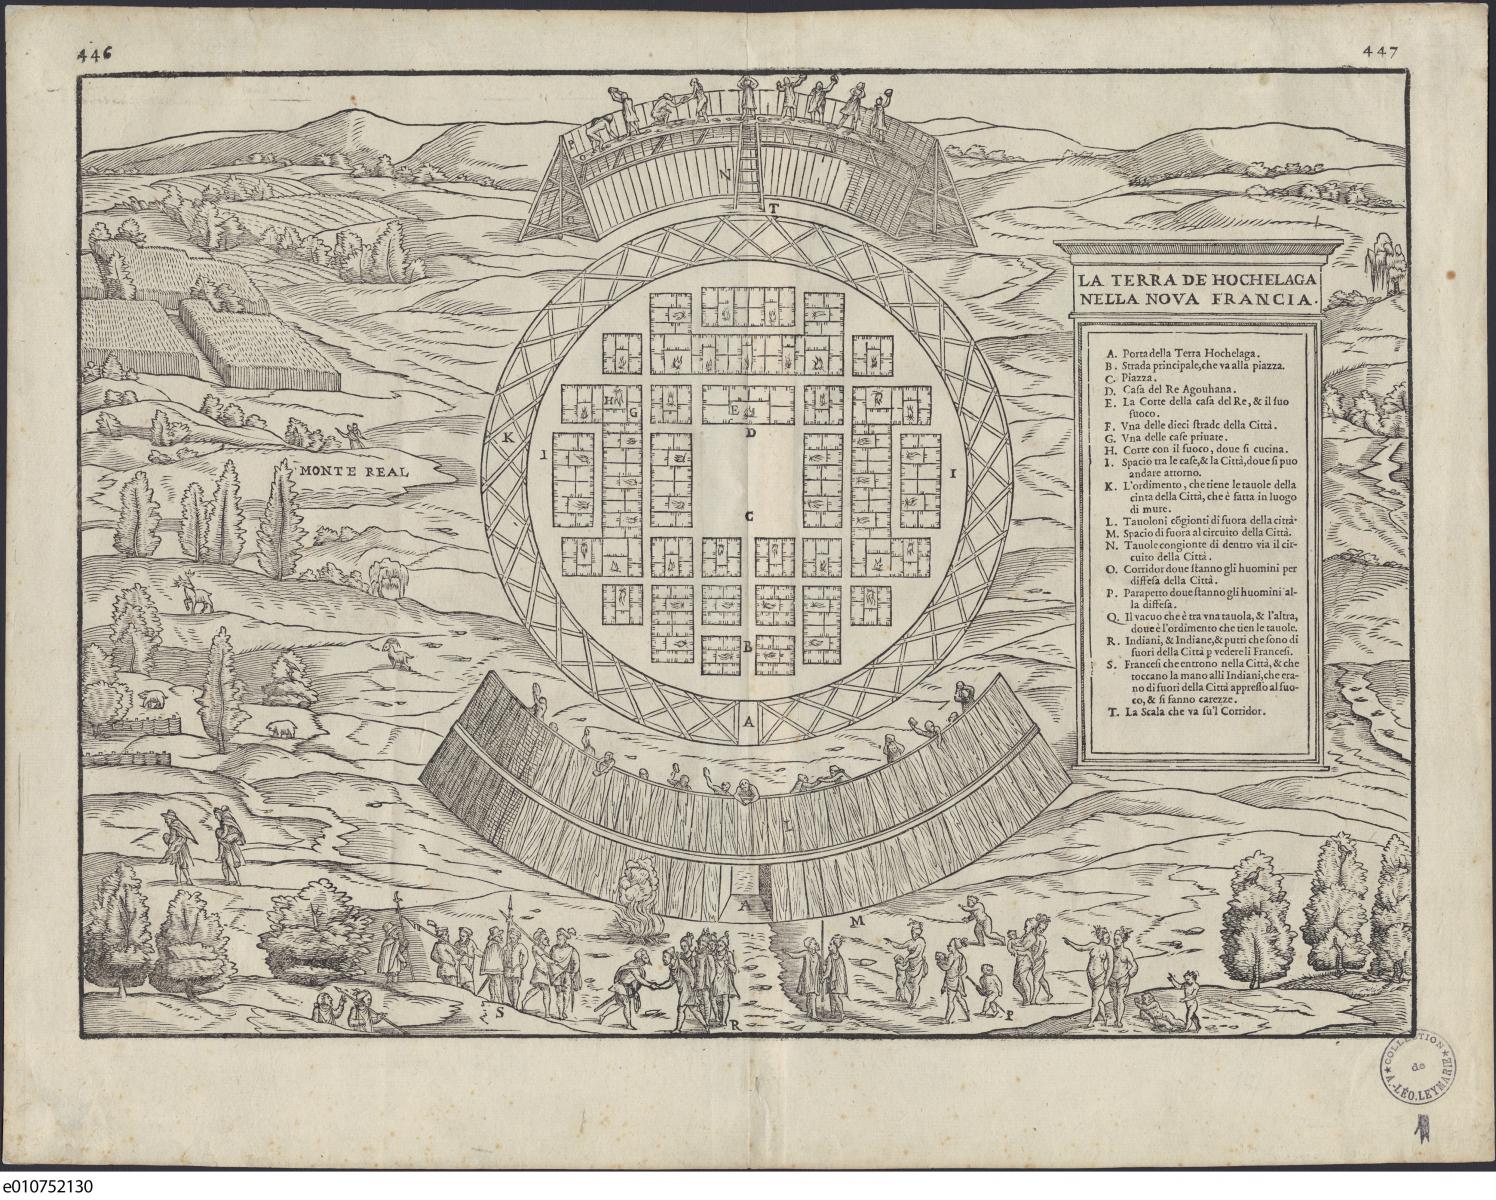 Ce plan figuratif de Gian Baptista Ramusio présente la bourgade d'Hochelaga selon les instructions de Jacques Cartier.